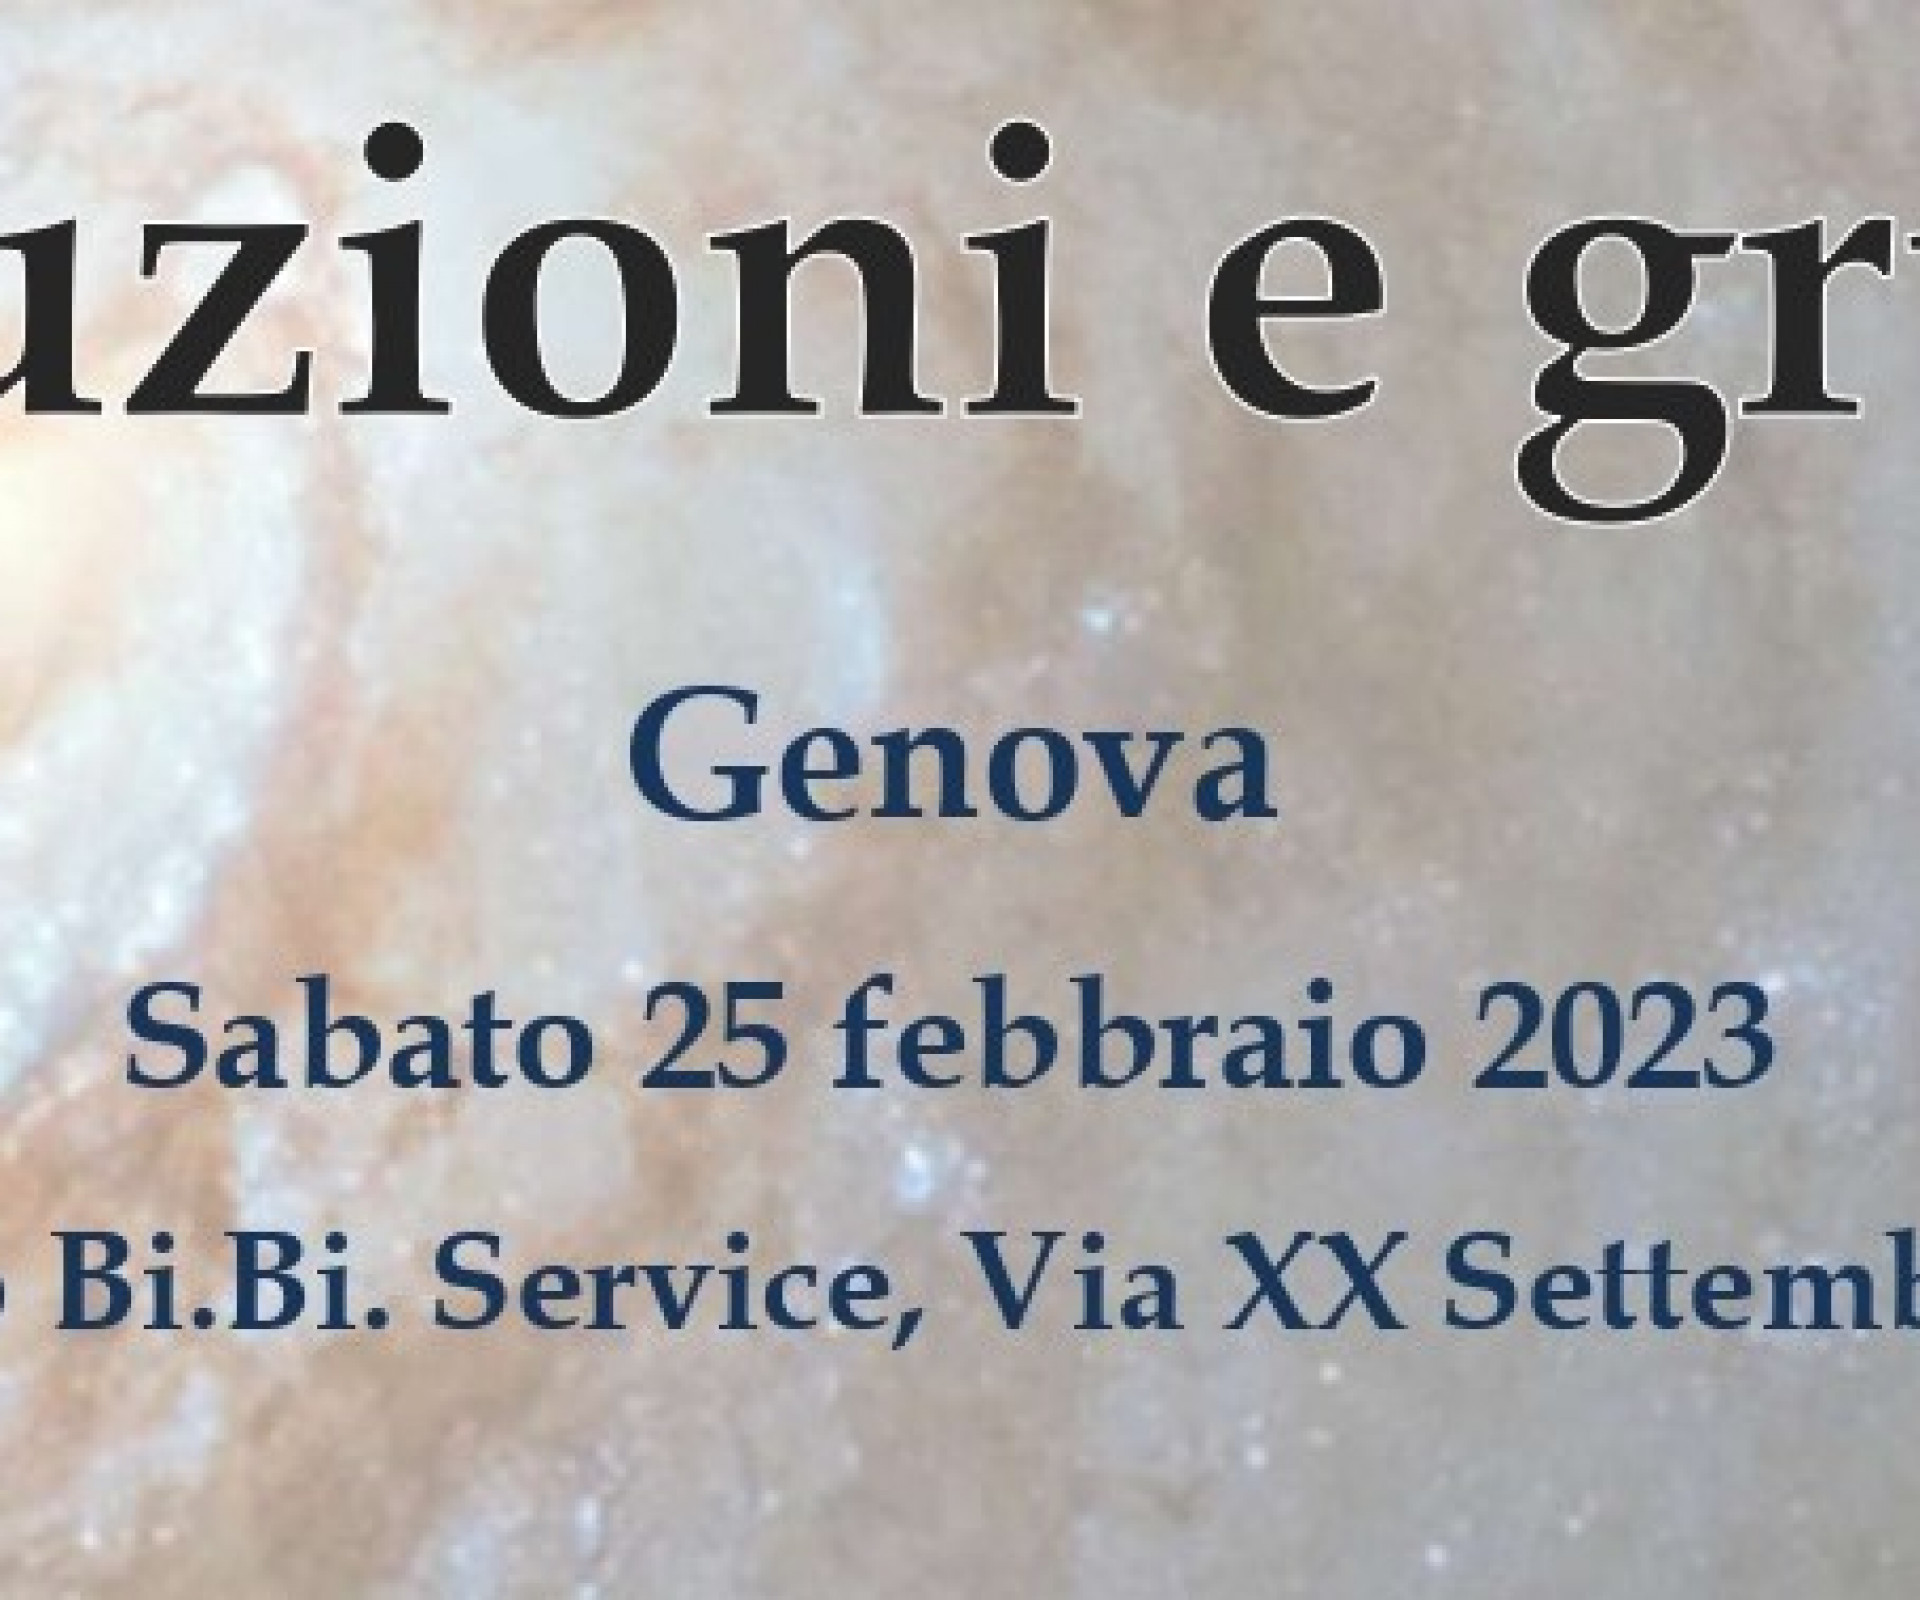 ISTITUZIONI E GRUPPI - Centro Psicoanalitico di Genova - Associazione ACANTO